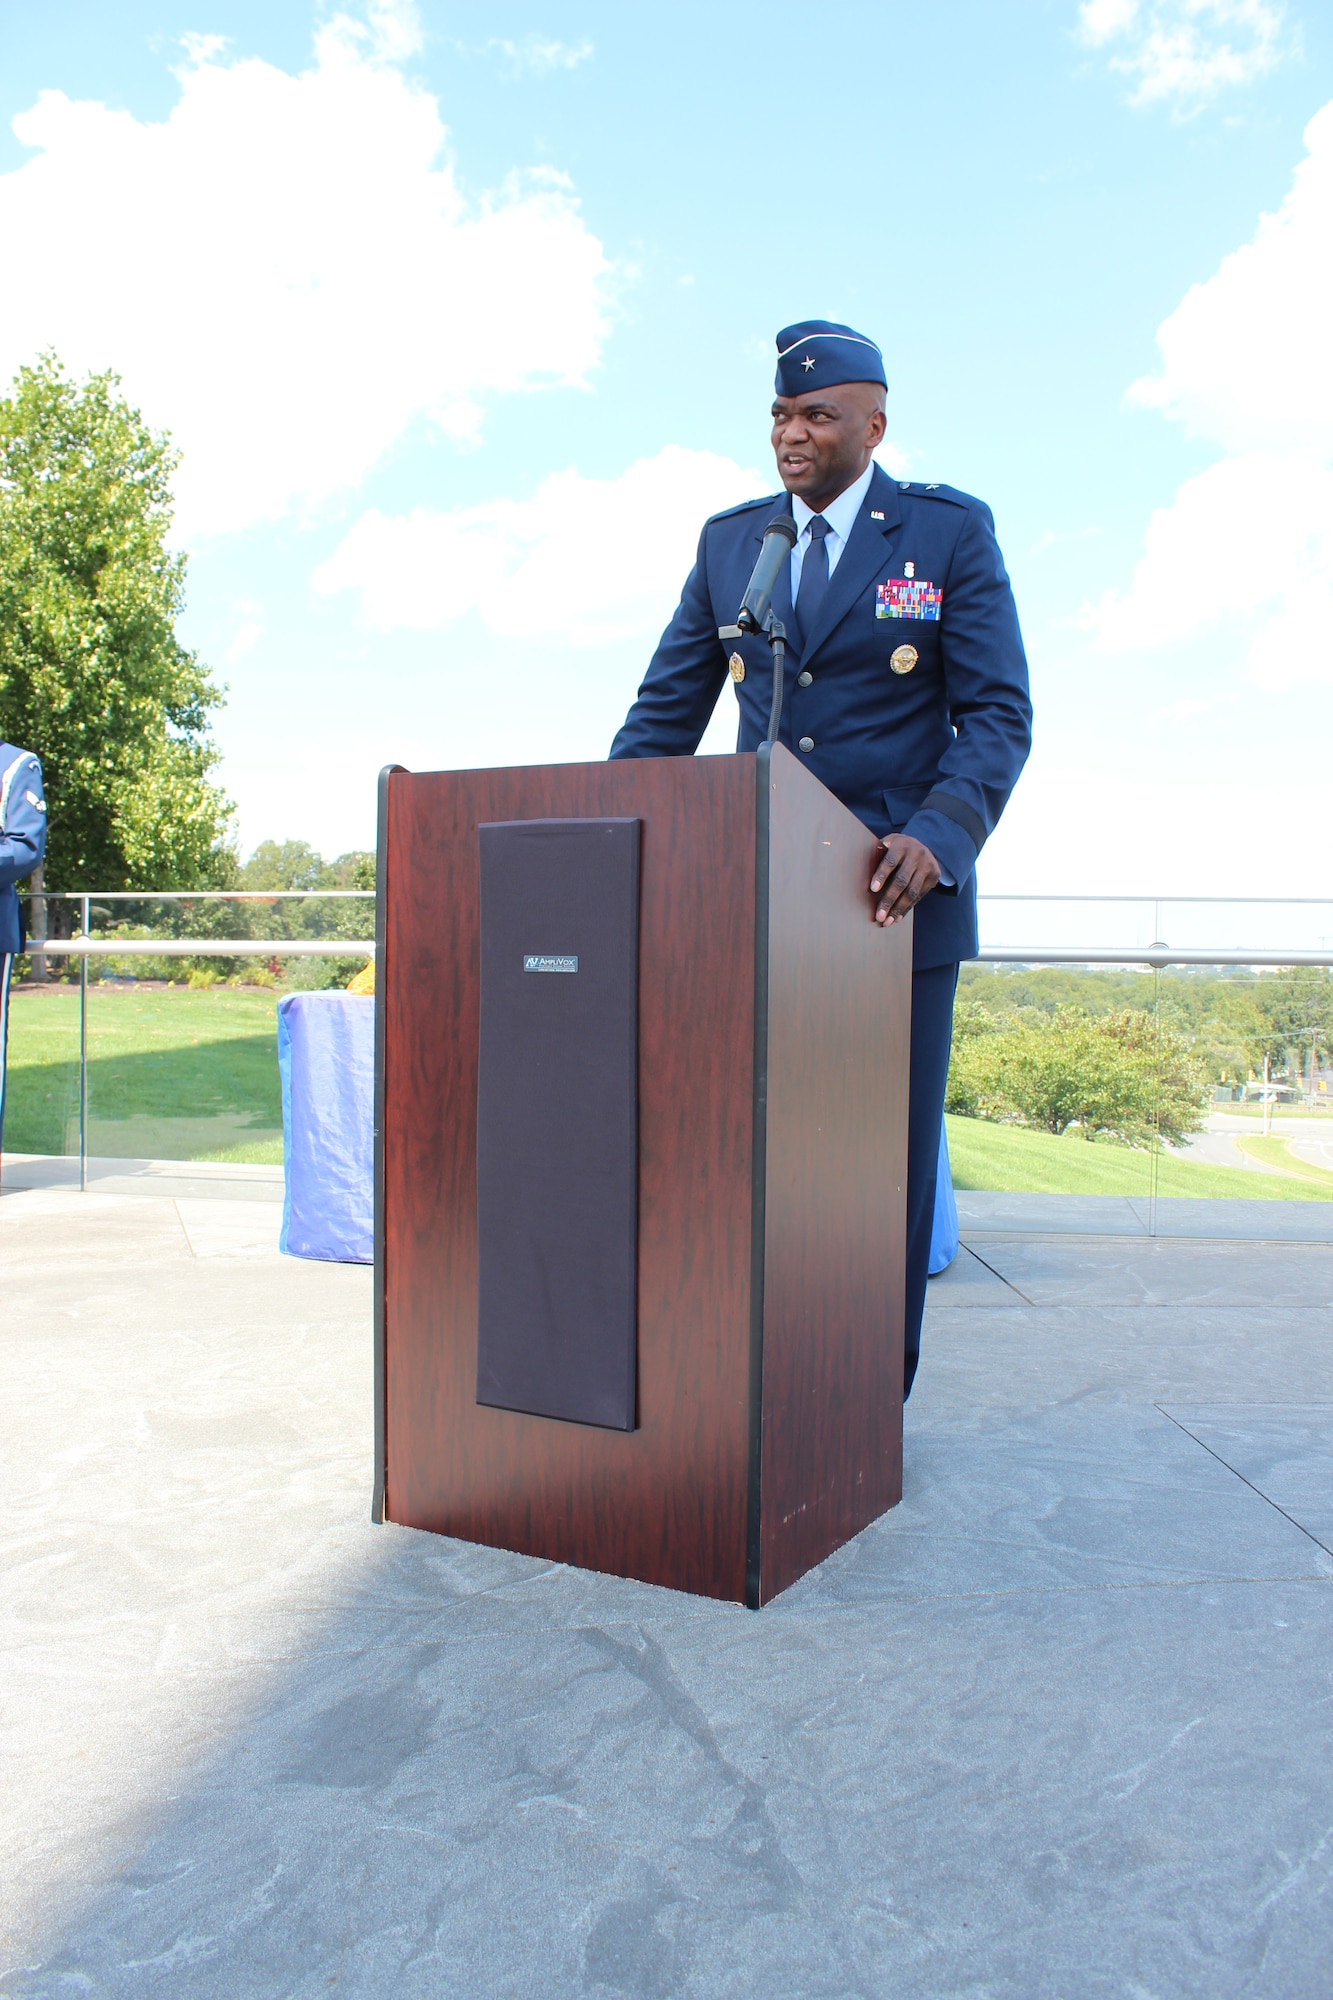 Image of an Airman talking at a podium.